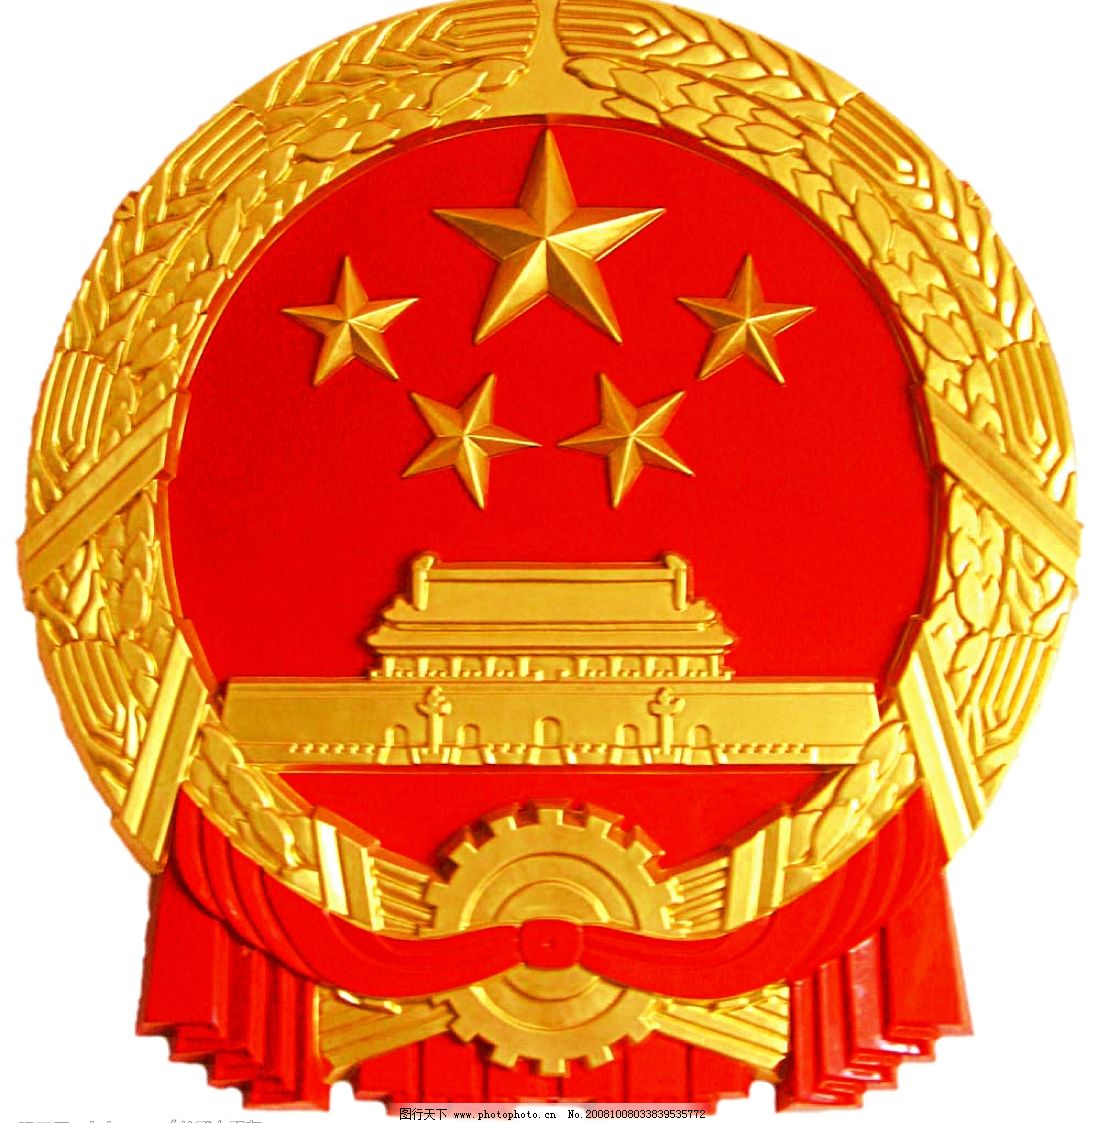 桂东县人民政府